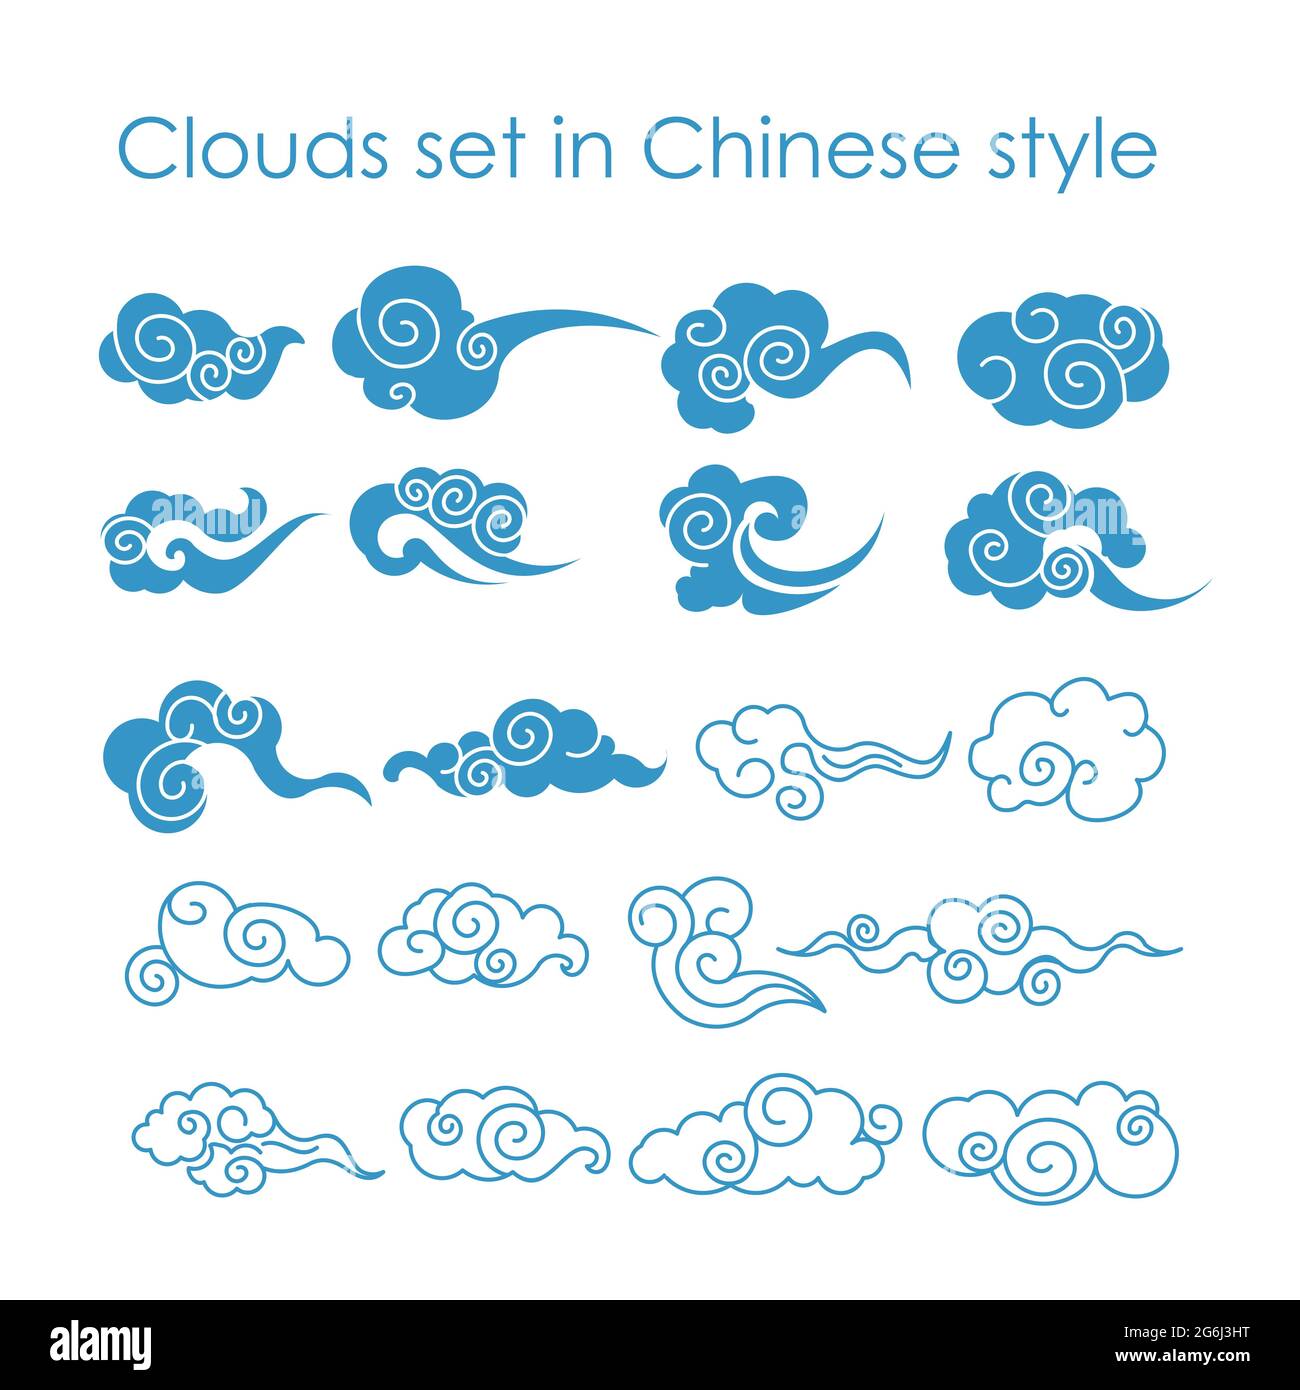 Vektor-Illustration Sammlung von blauen Wolken Ikonen im chinesischen Stil, flaches Design. Stock Vektor